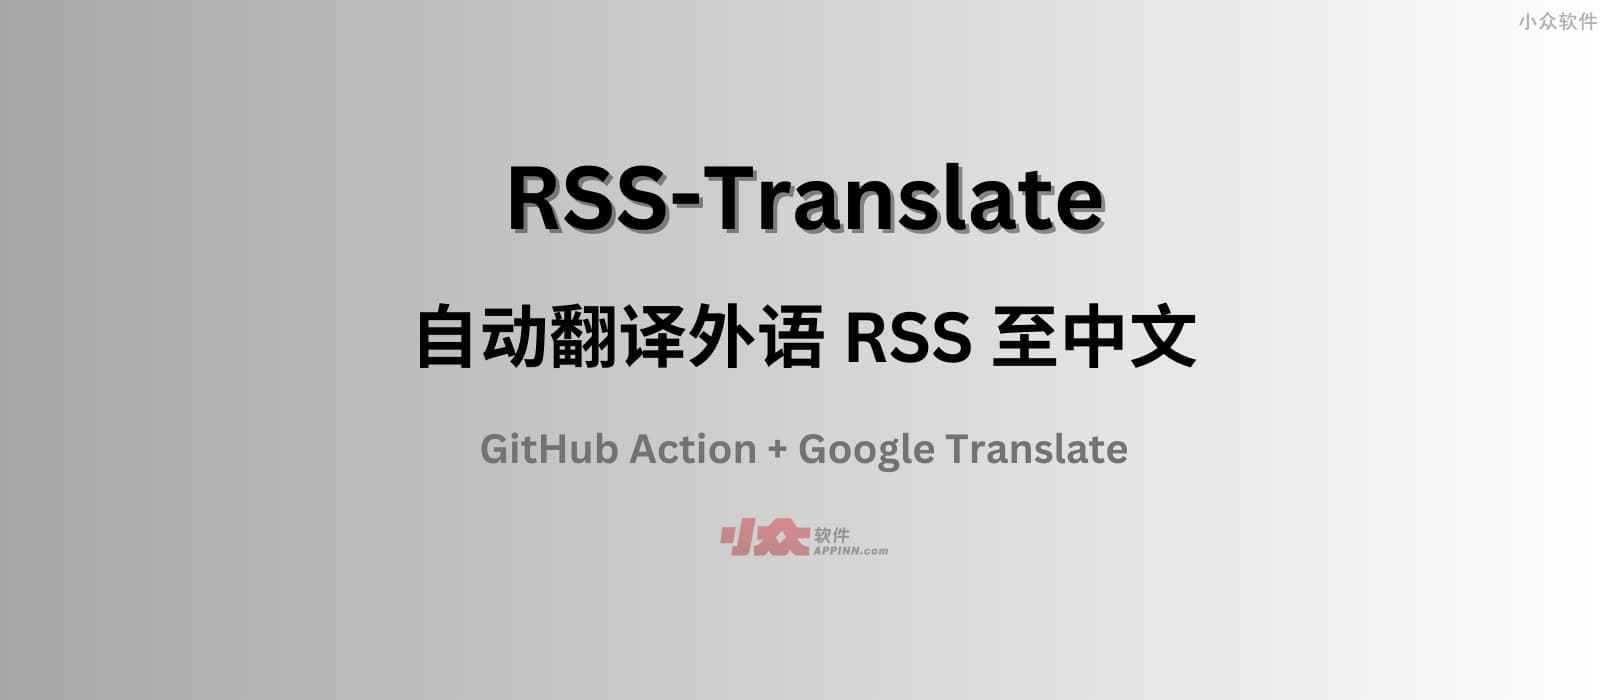 RSS-Translate – 自动翻译外语 RSS 至中文